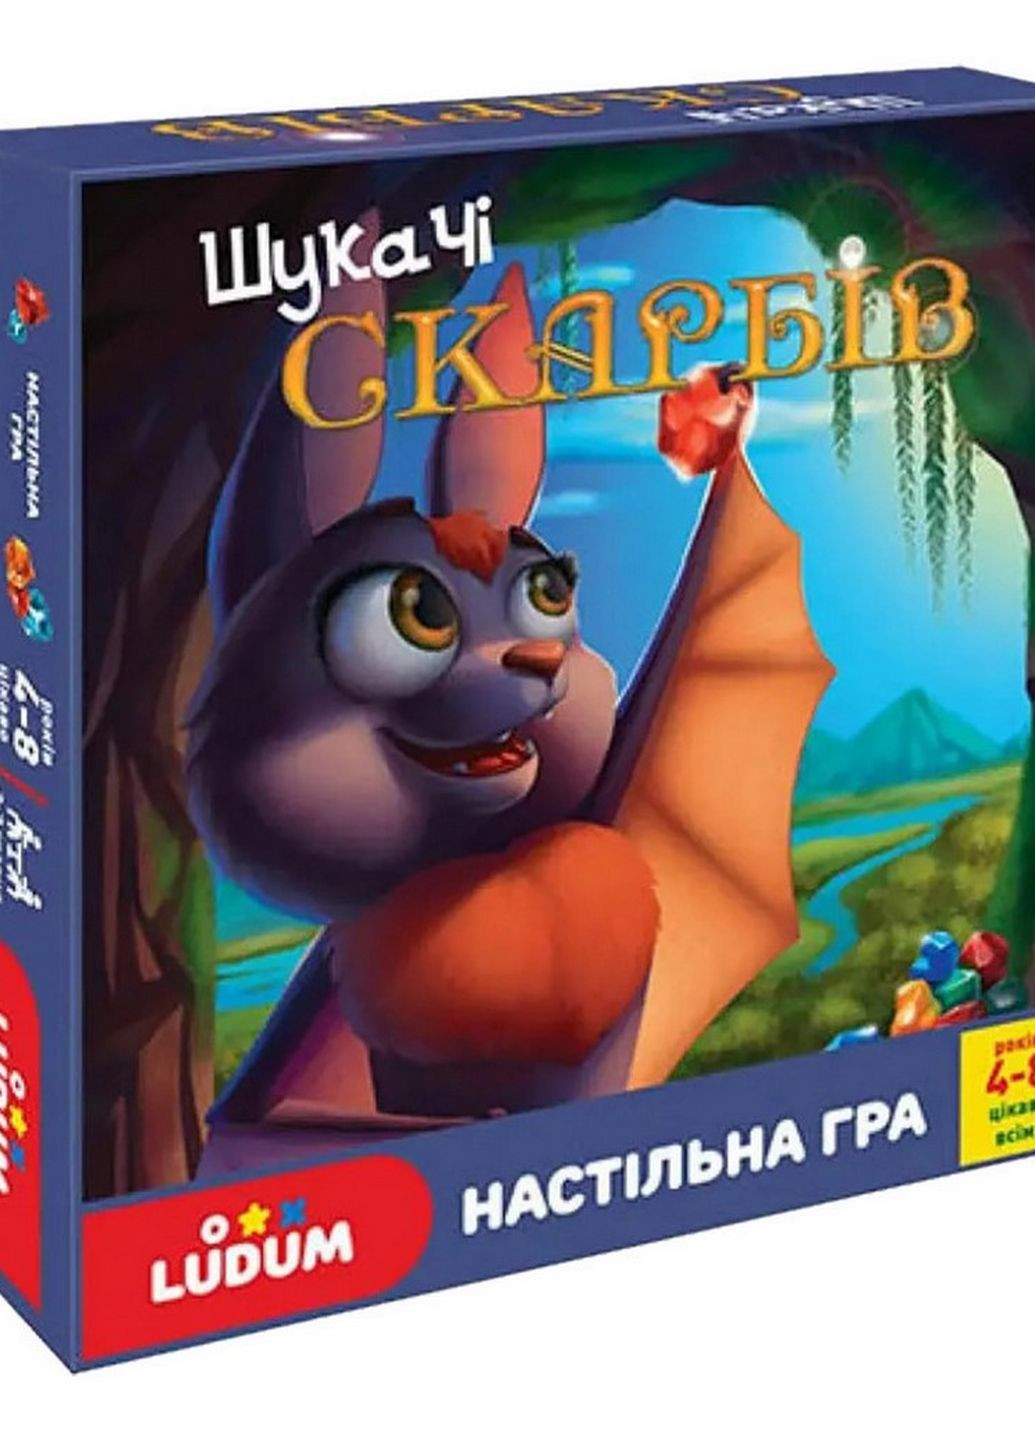 Детская настольная игра "Искатели сокровищ" LD1049-55 украинский язык Ludum (262085437)